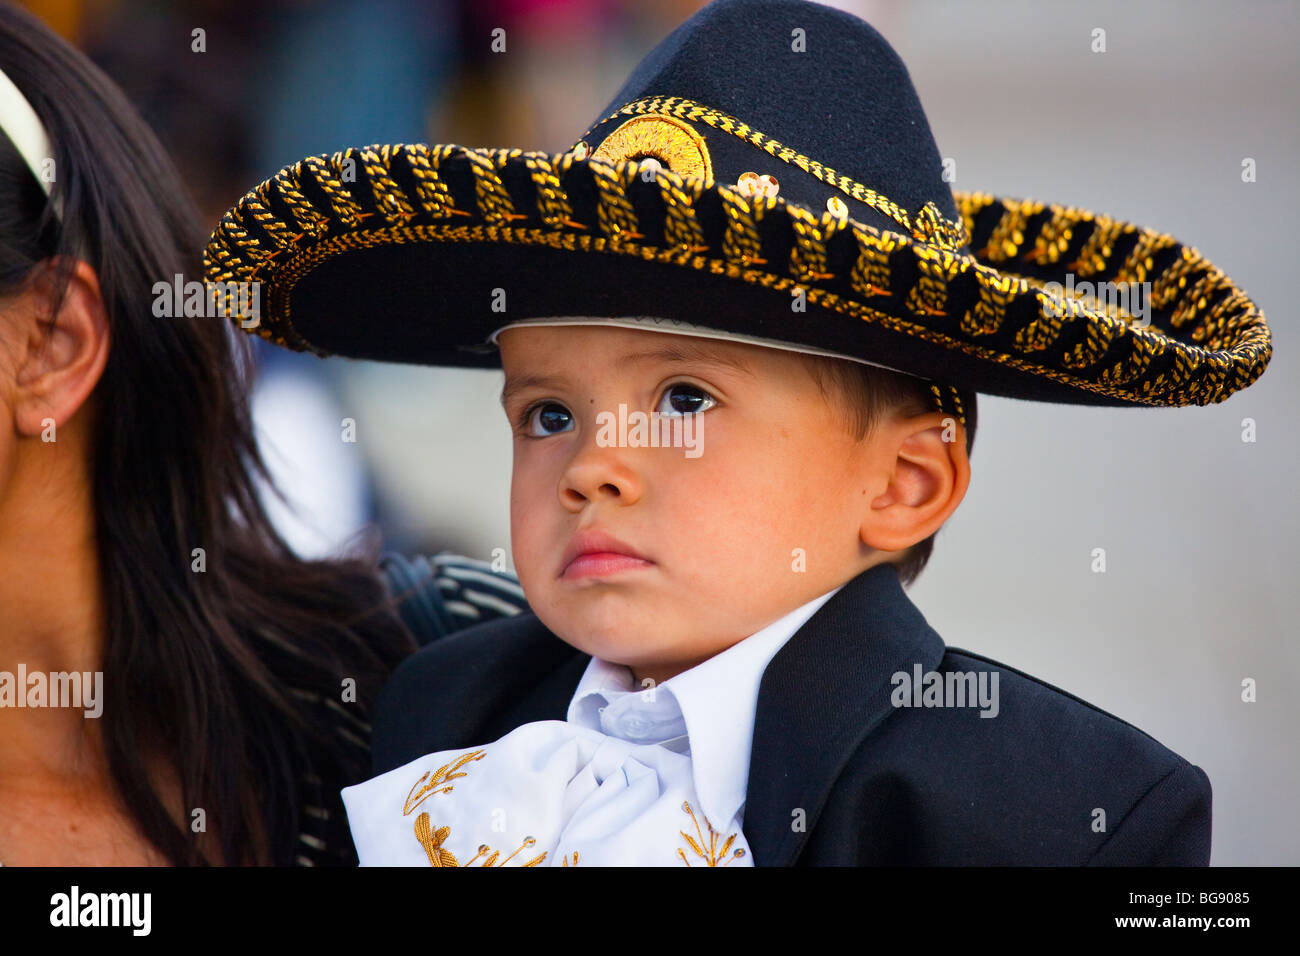 Boy dressed in a Mariachi costume at the Festival of Saint Cecilia in Plaza Garibaldi Mexico City Stock Photo